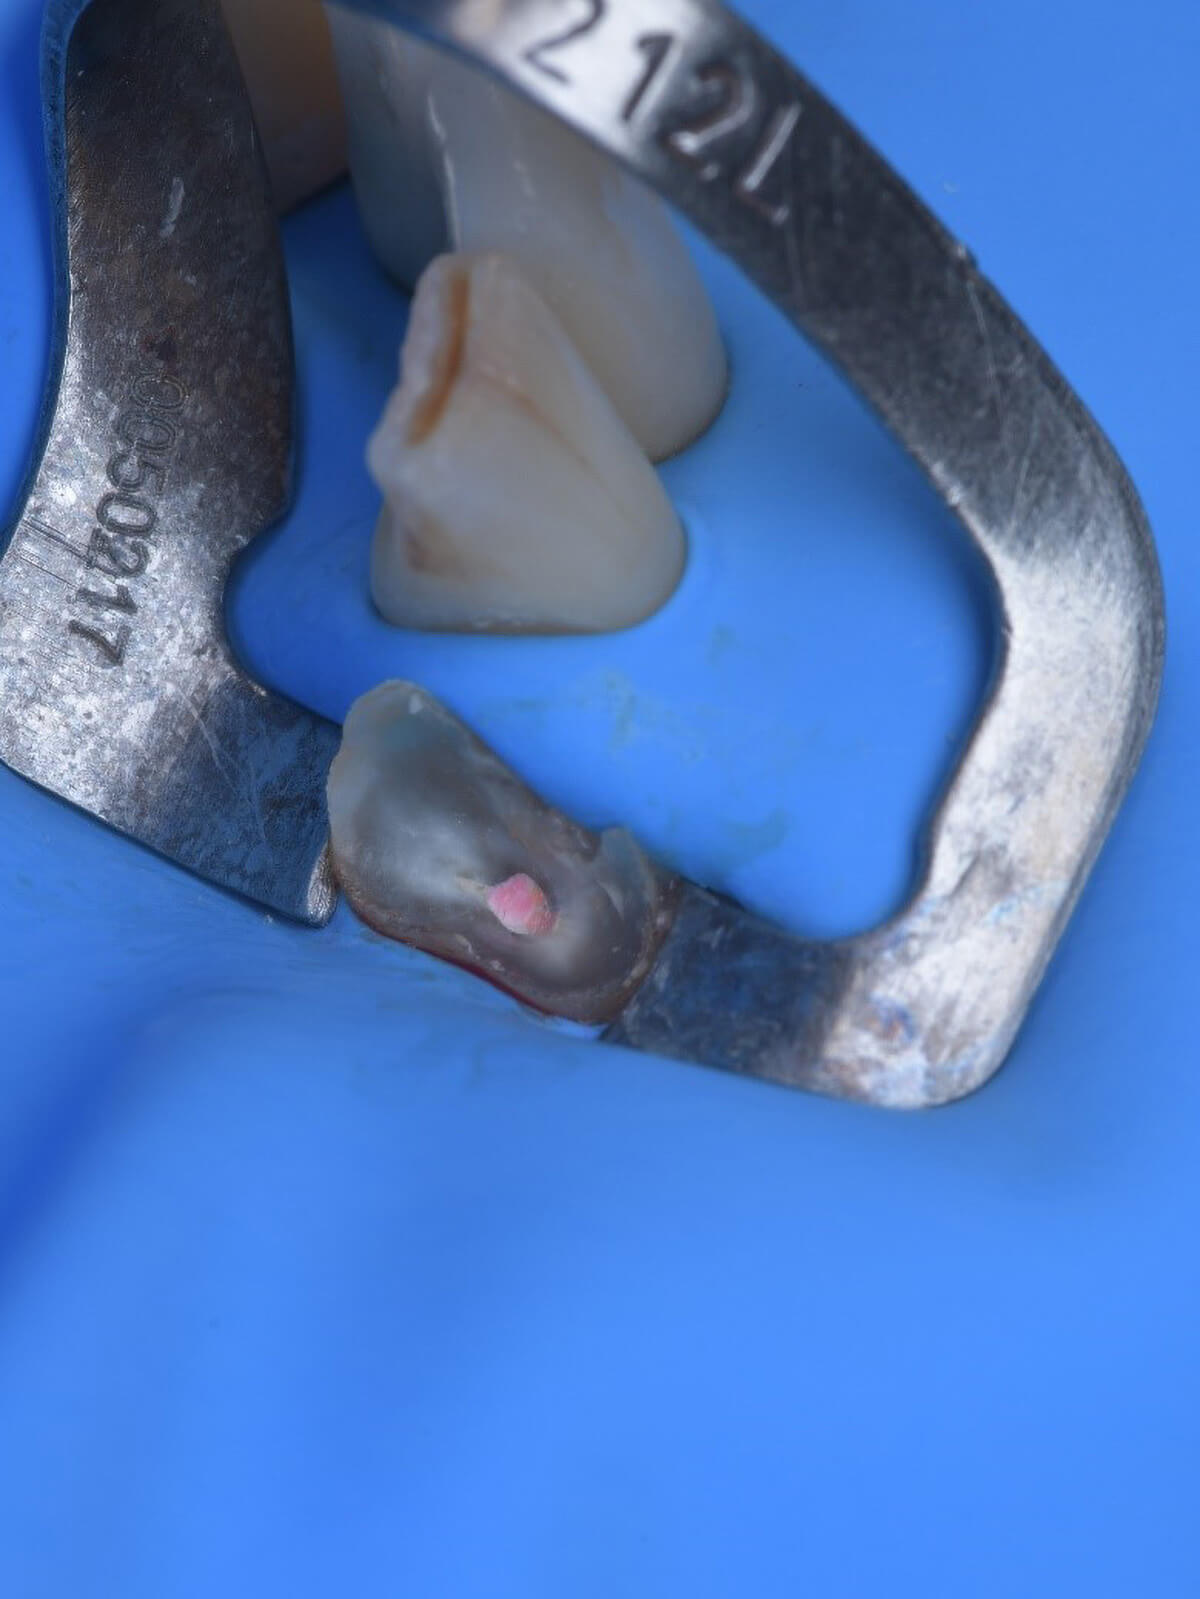 Fig. 04 Isolamento absoluto do dente 42 para iniciar os procedimentos.